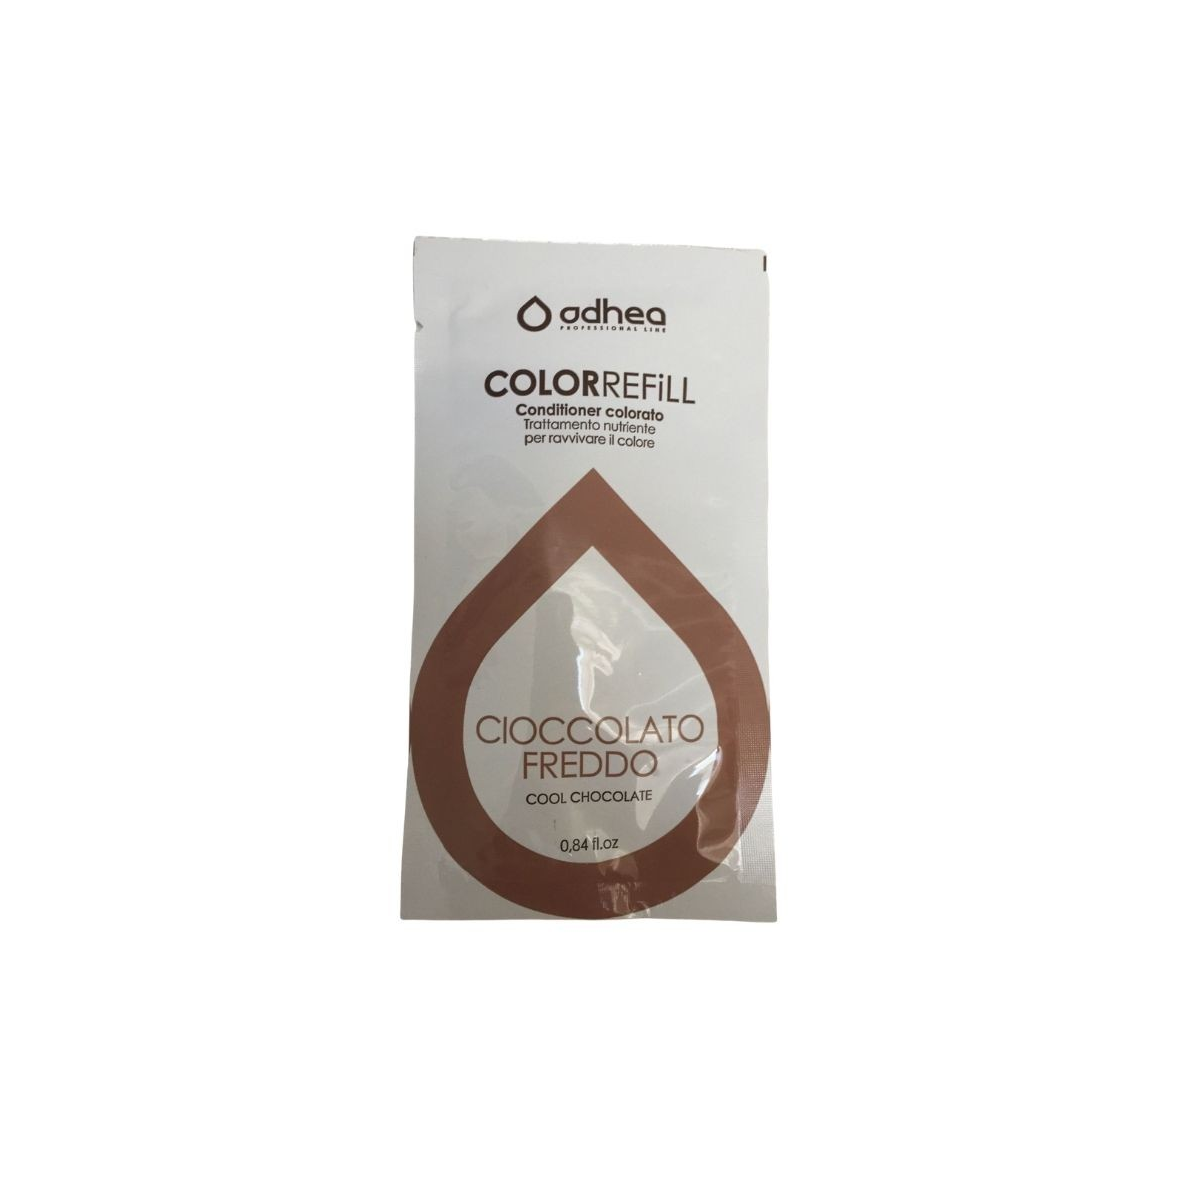 ODHEA - COLOR REFILL CIOCCOLATO FREDDO (25ml) Conditioner colorato